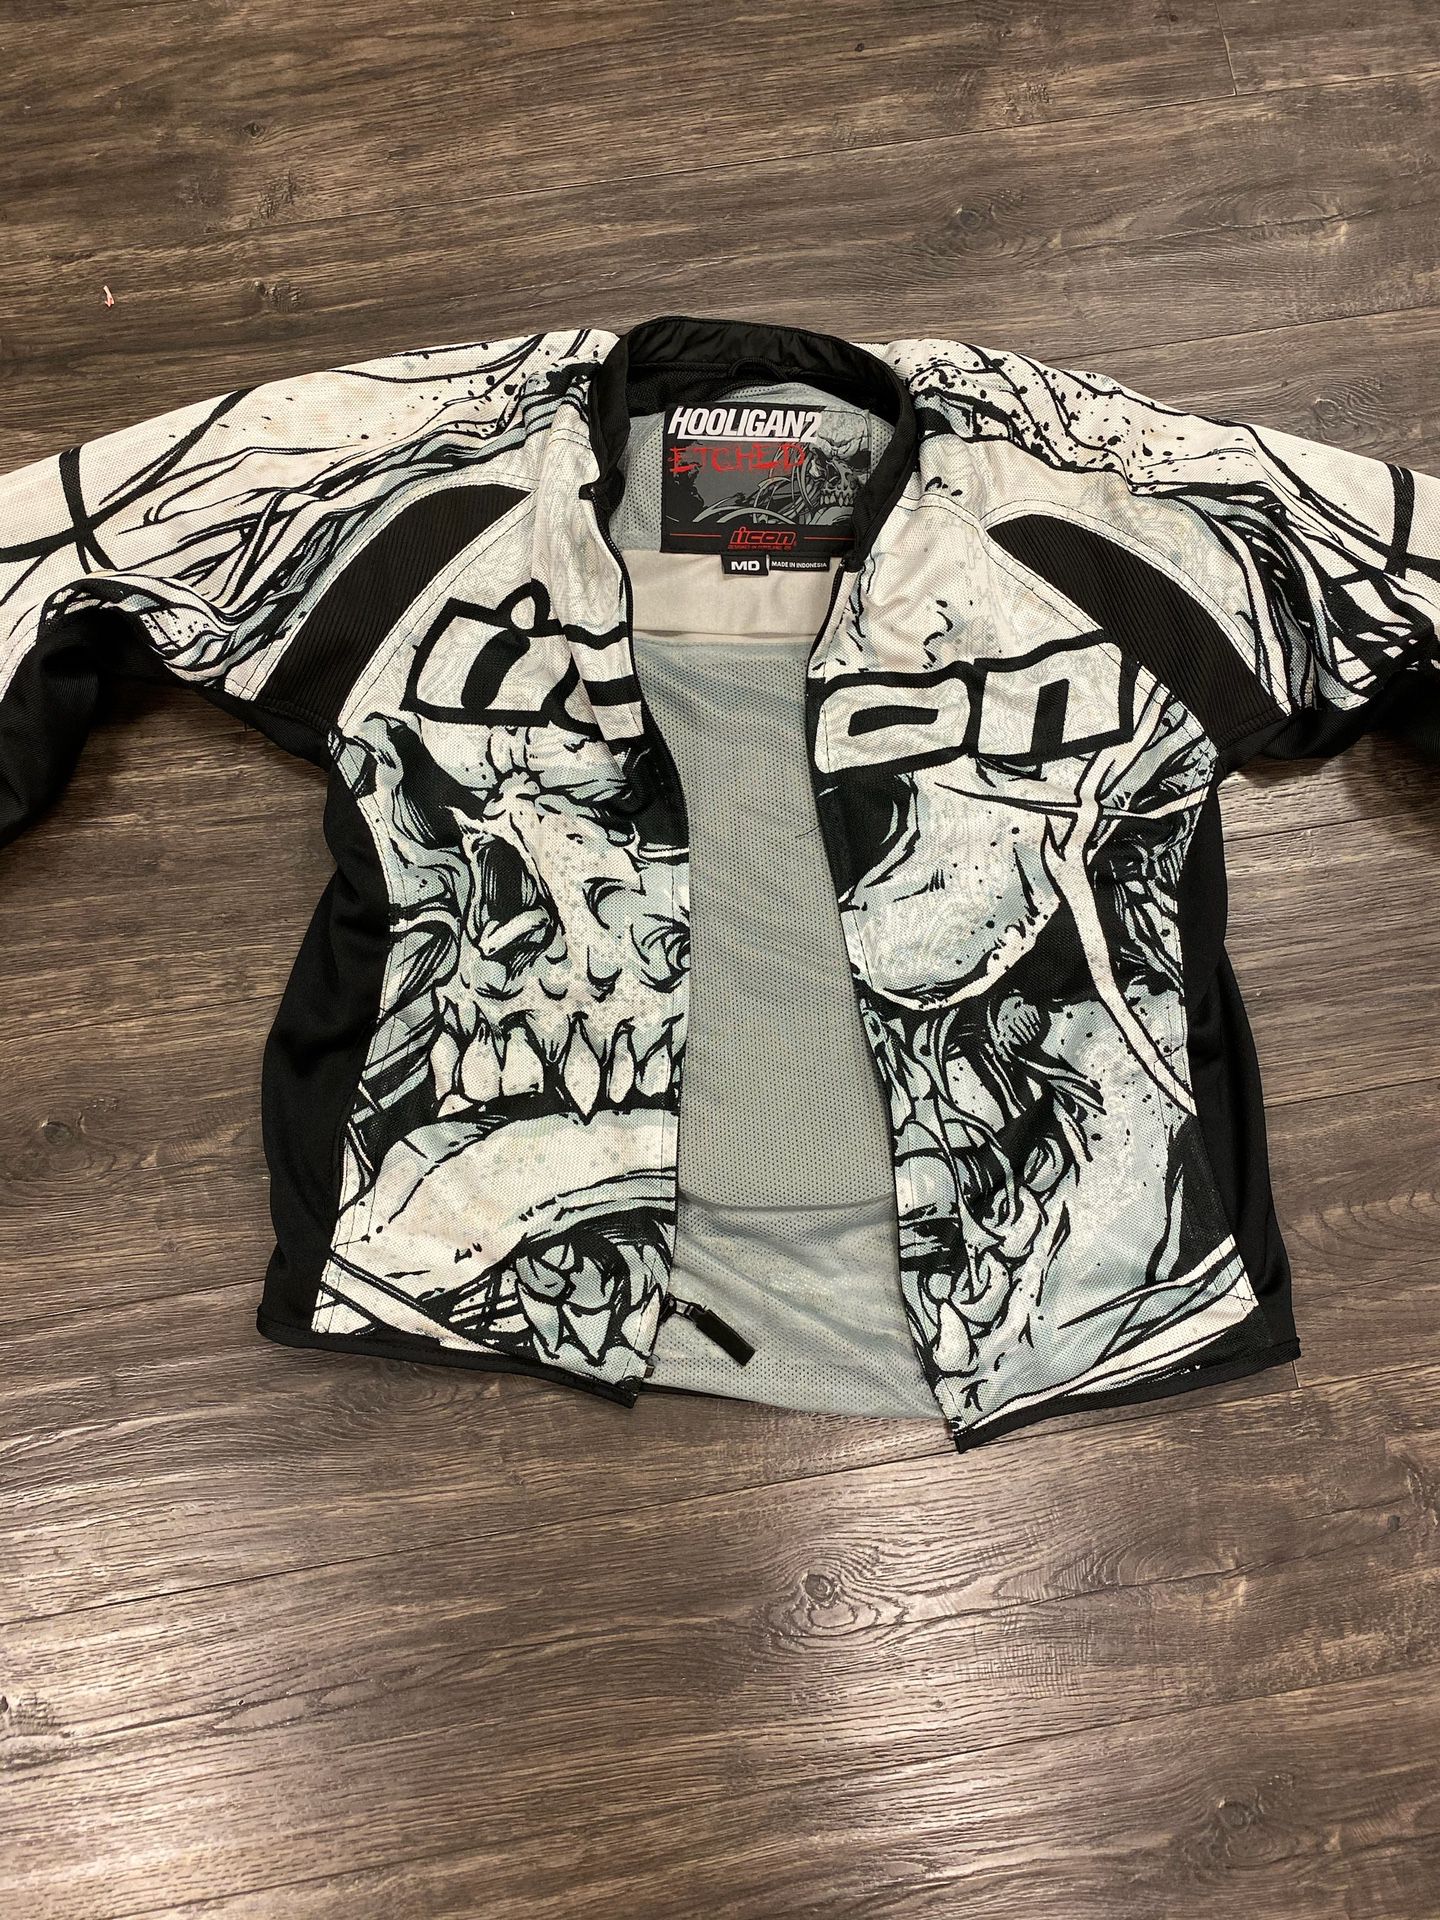 Icon perforated hooligan motorcycle jacket size medium